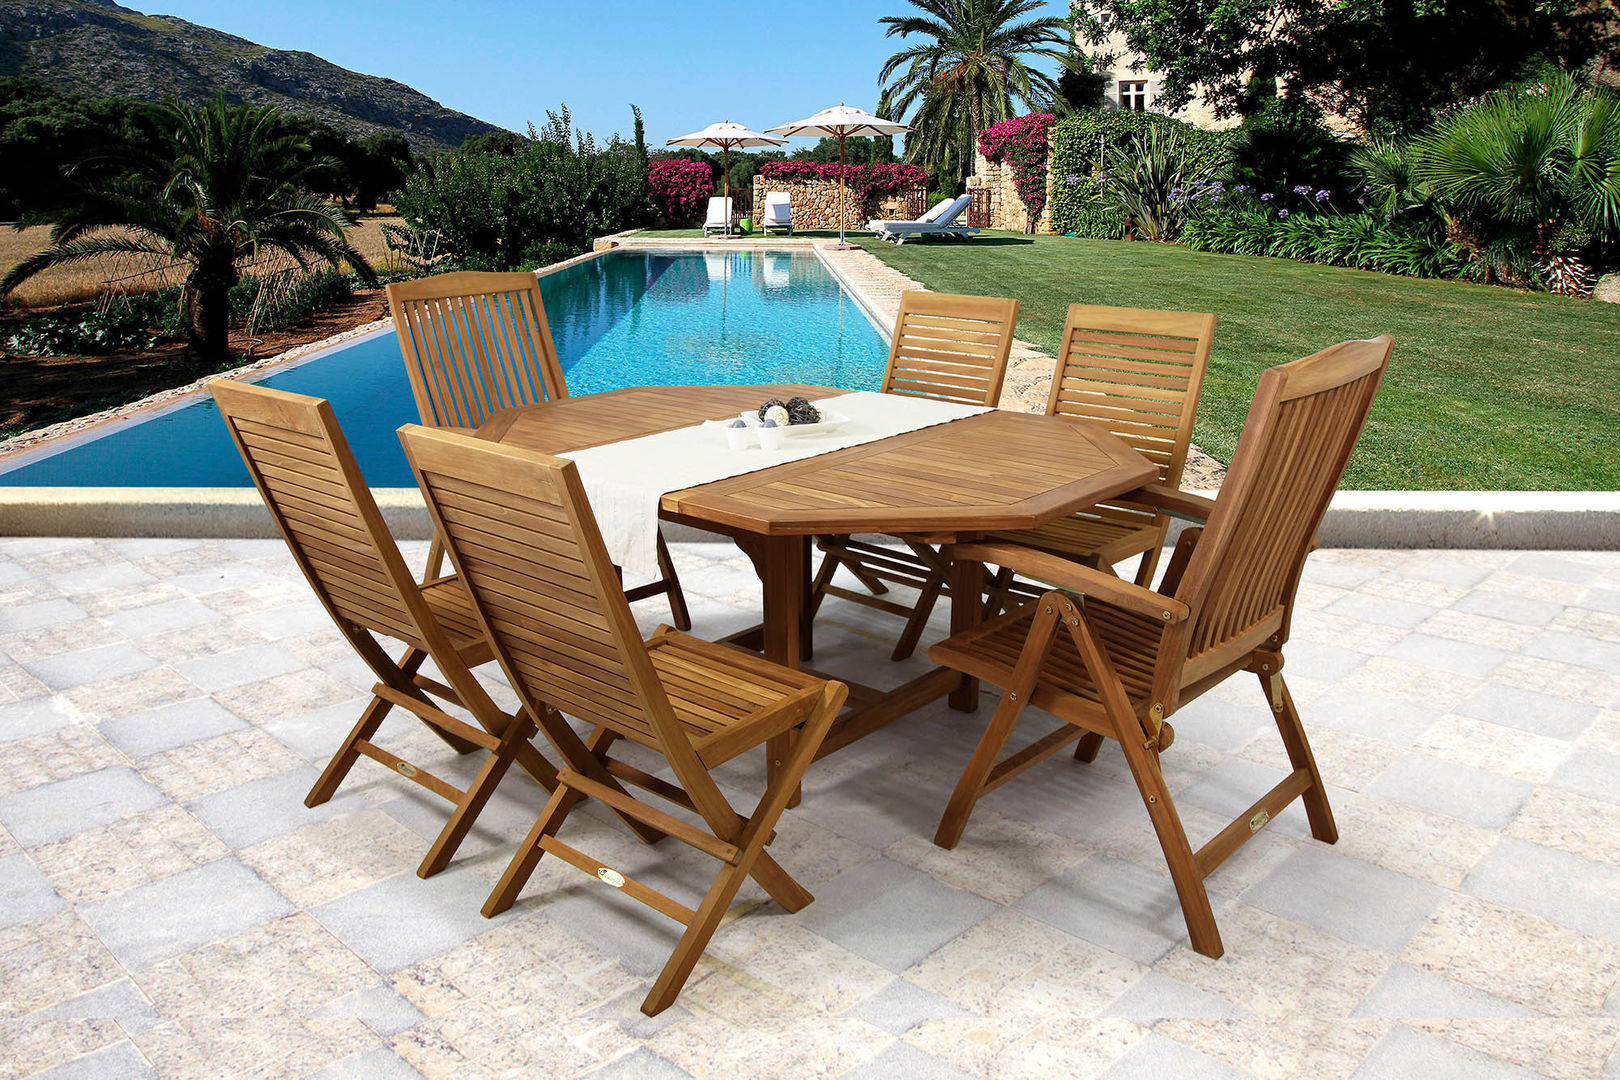 Conjunto de mesa y sillas Roma para jardín o terraza. Mesa de exterior